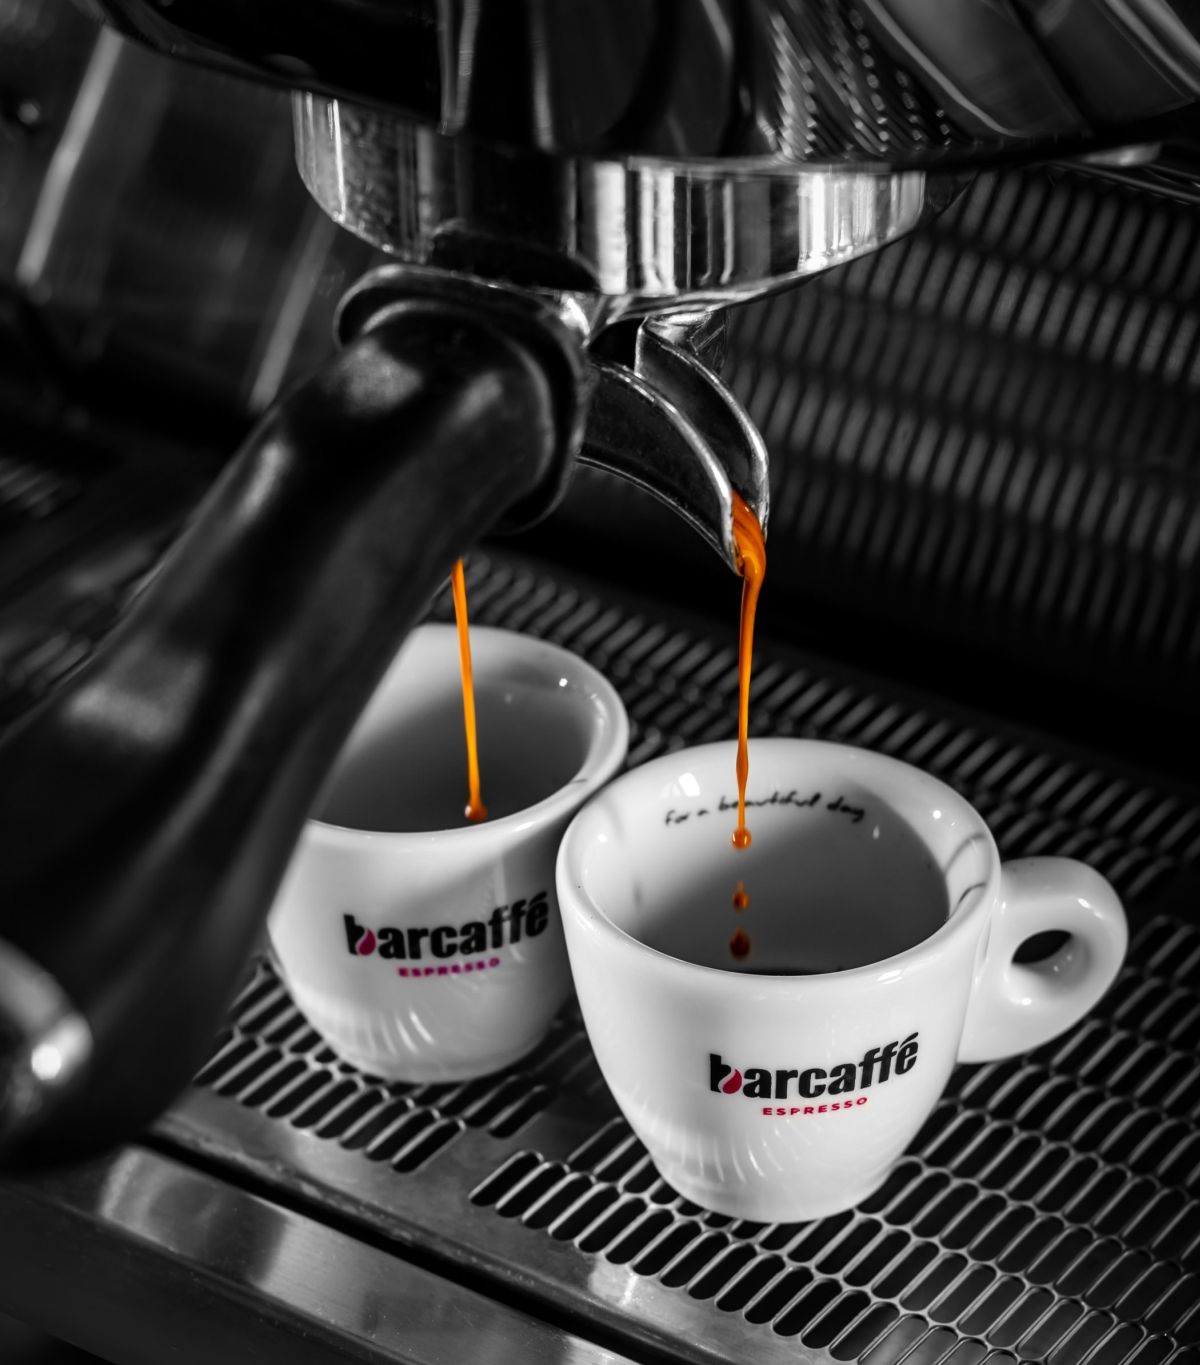 barcaffe espresso aparat